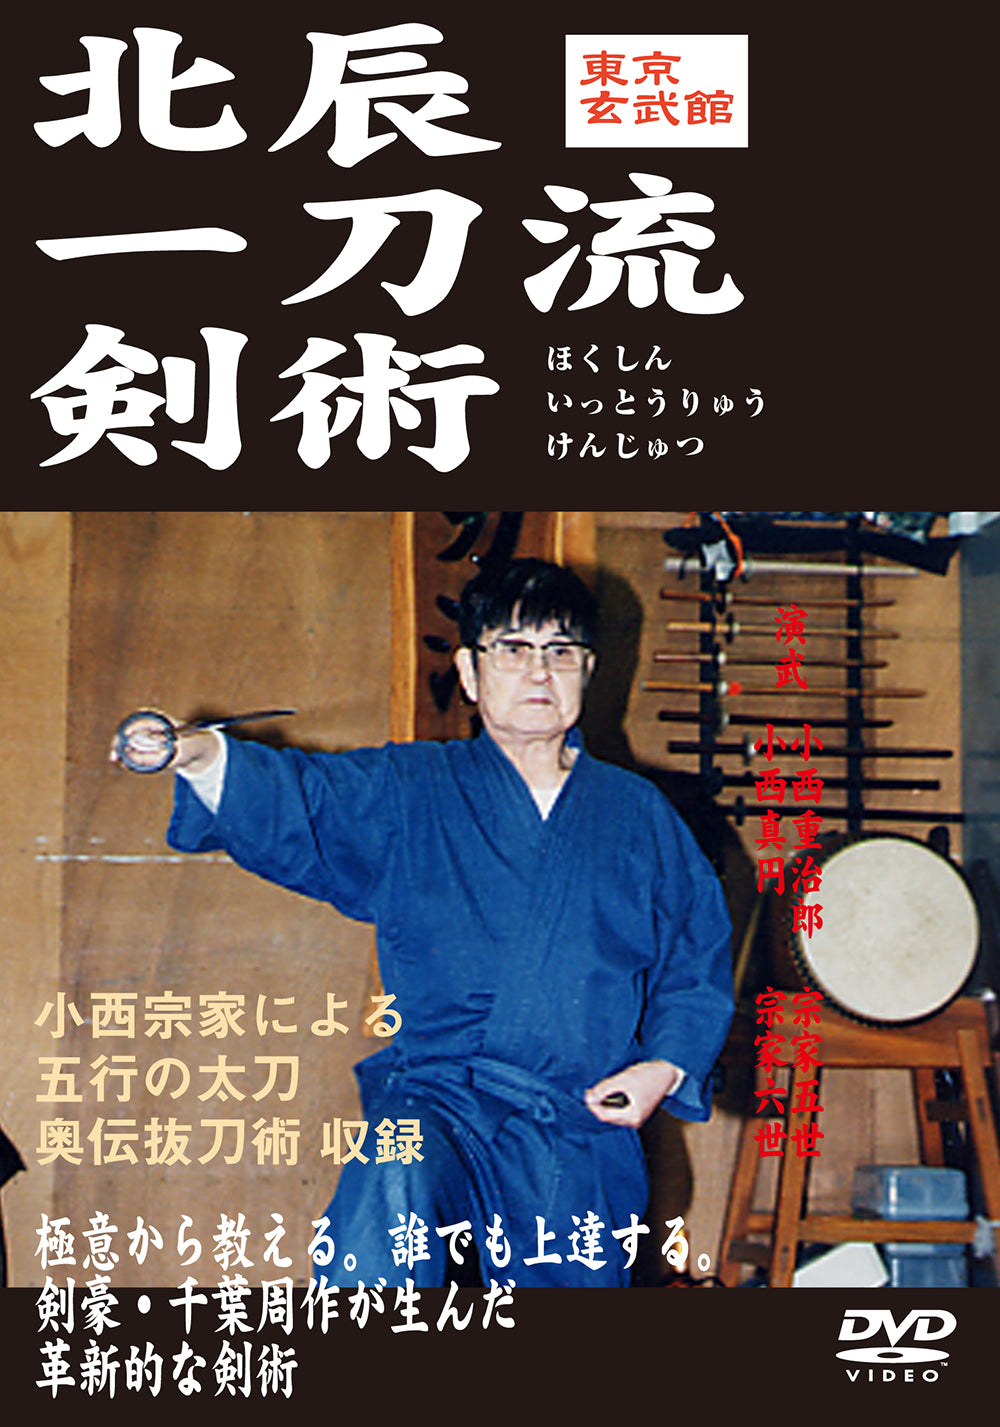 Hokushin Itto Ryu Kenjutsu Genbukan Vol 1 DVD by Shigejiro Konishi